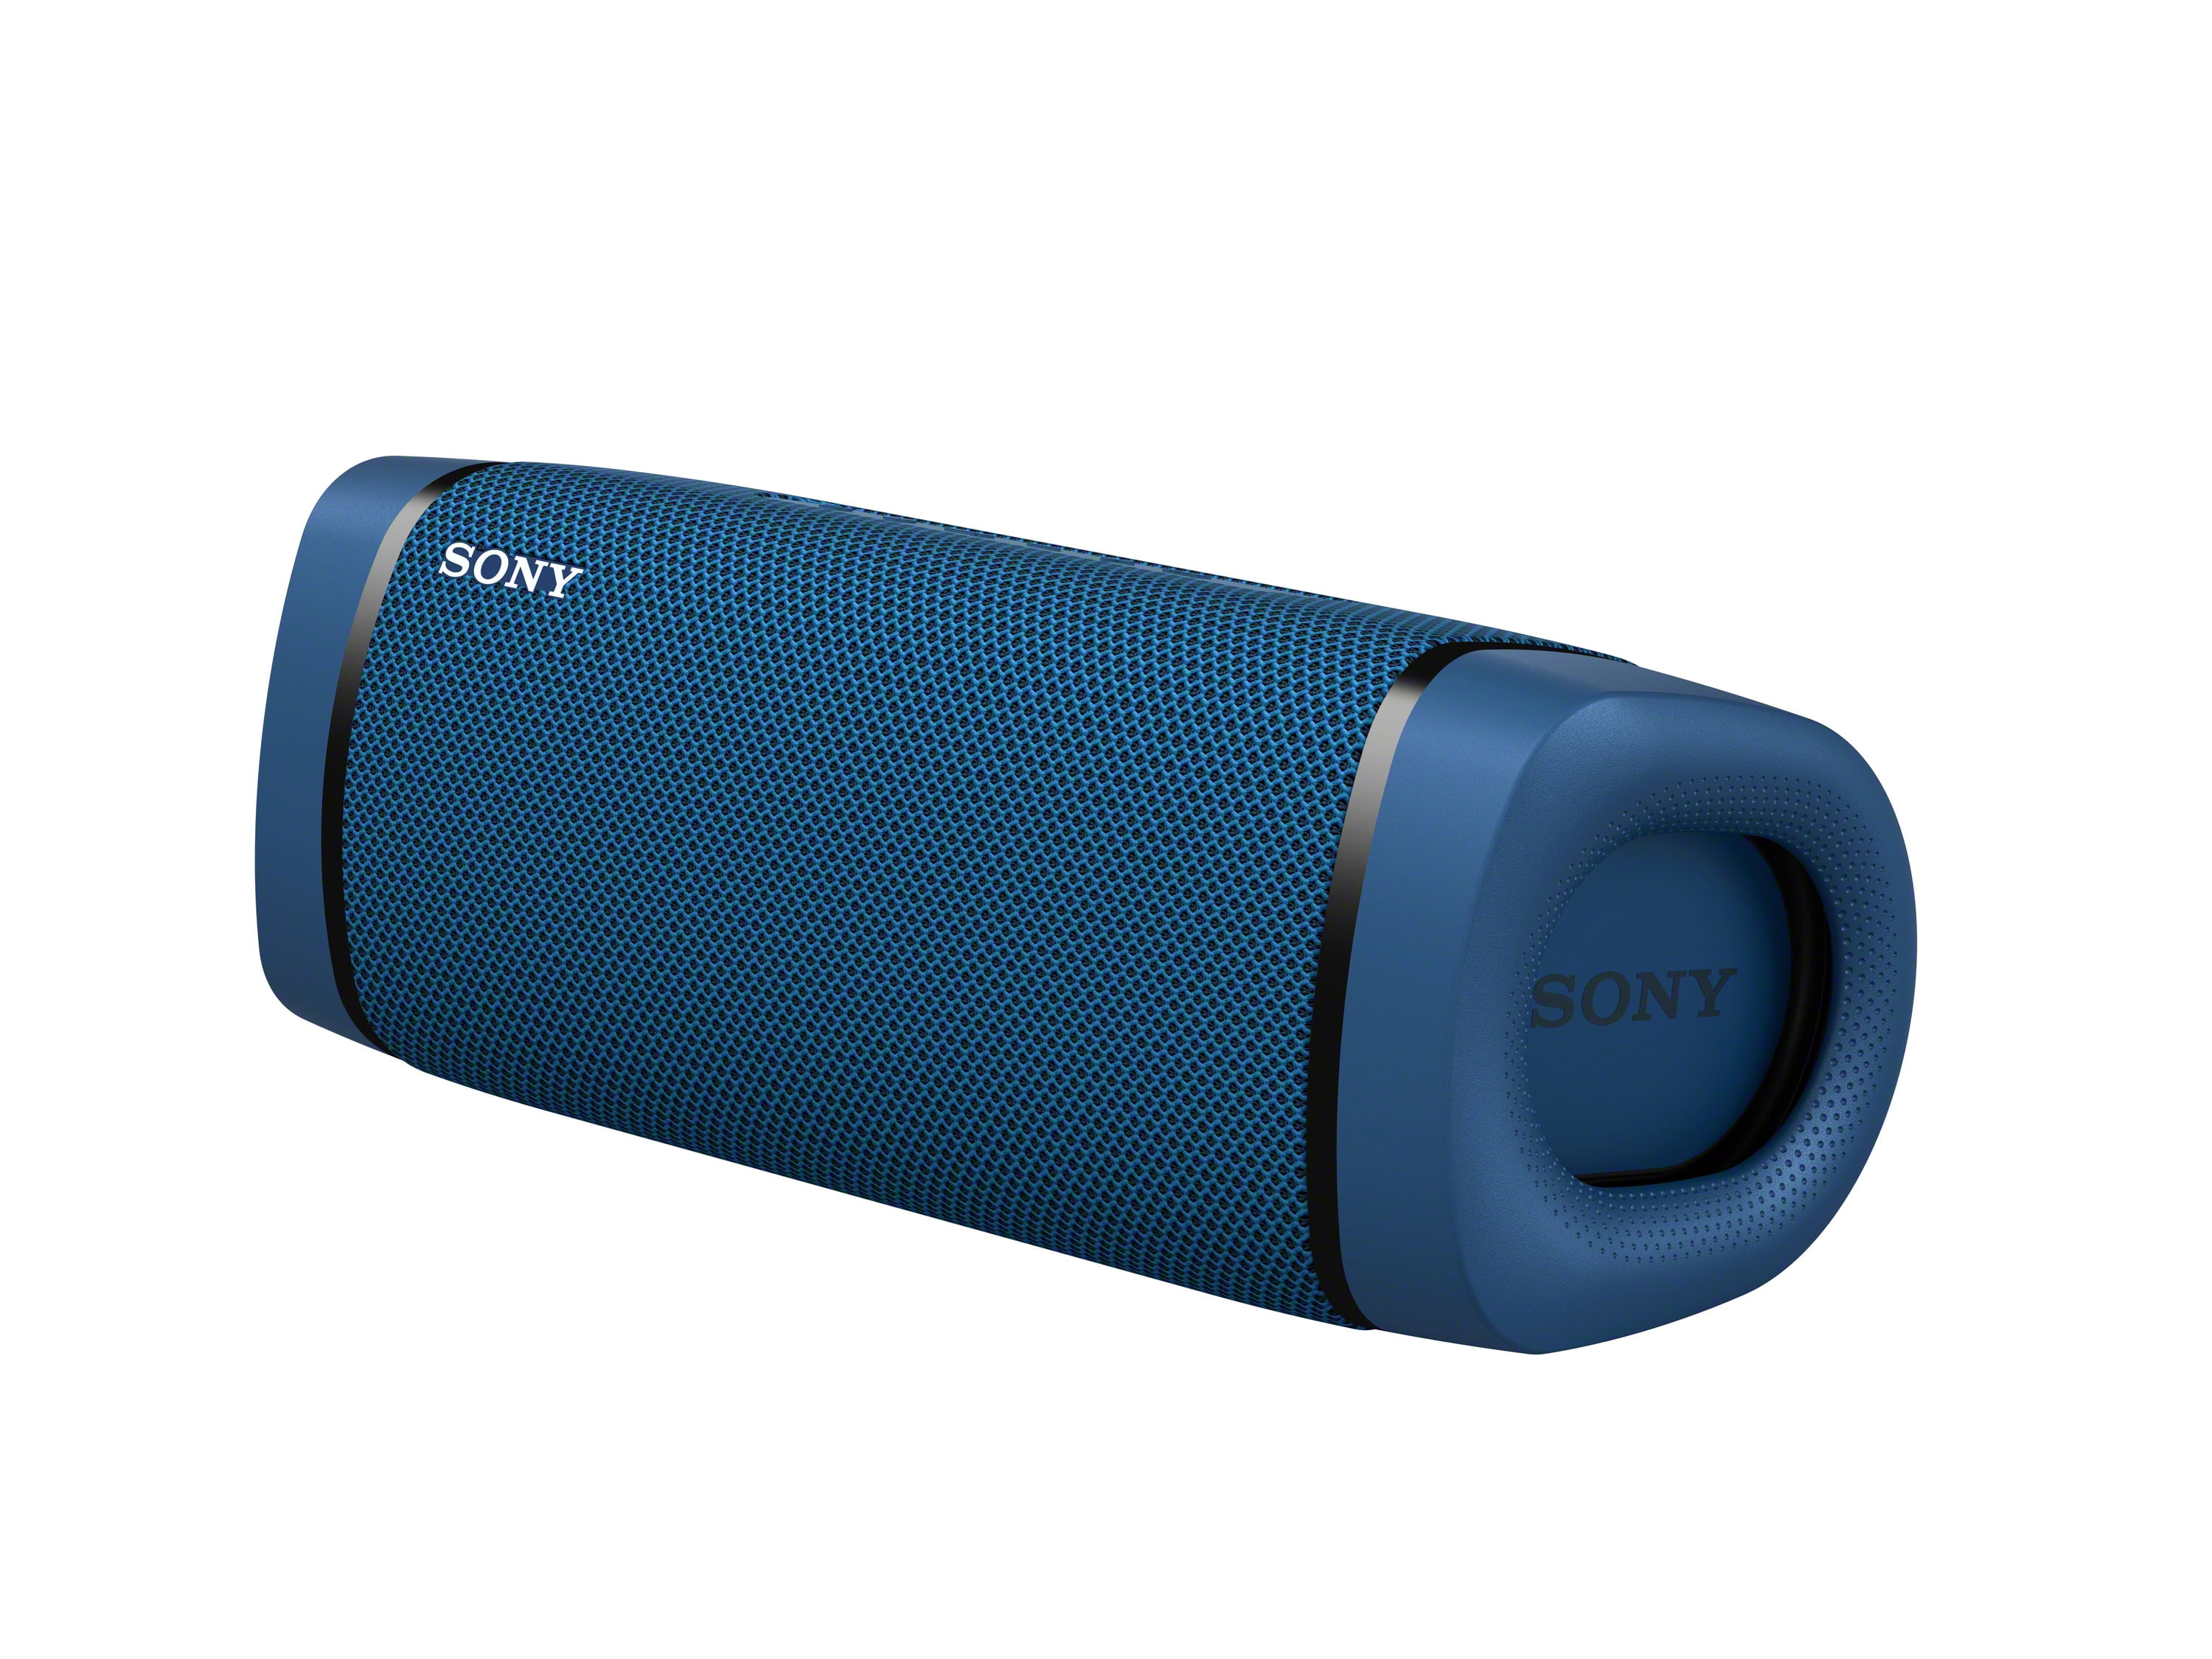 Sony SRSXB33 Wireless Portable BLUETOOTH® Waterproof Speaker - Blue - Walmart.com